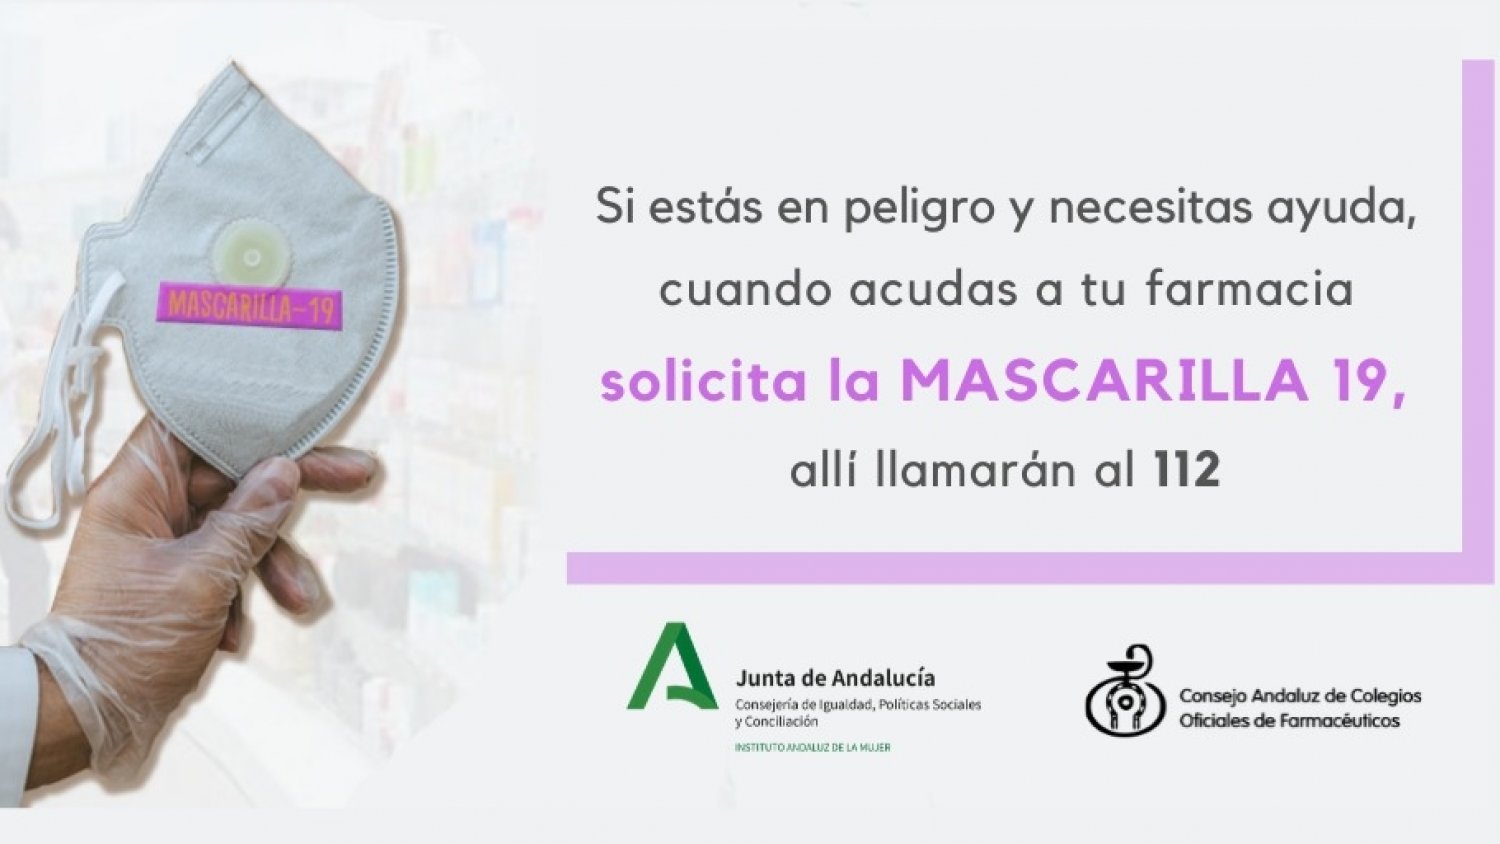 Las víctimas de violencia de género podrán solicitar ayuda en las farmacias con la clave ‘Mascarilla 19’